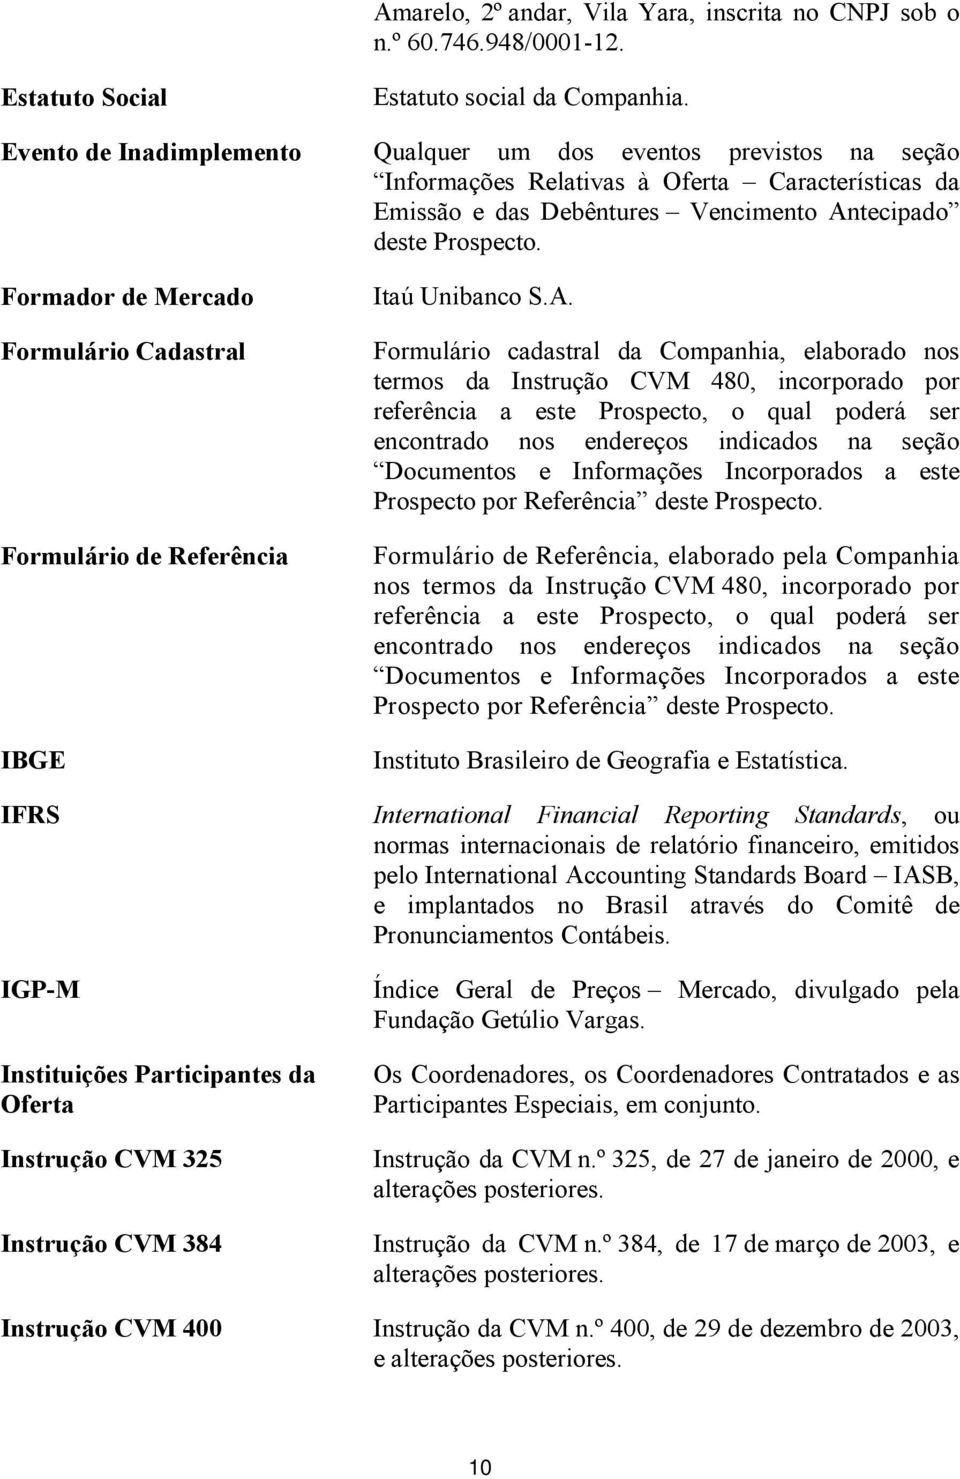 Formador de Mercado Formulário Cadastral Formulário de Referência IBGE Itaú Unibanco S.A.